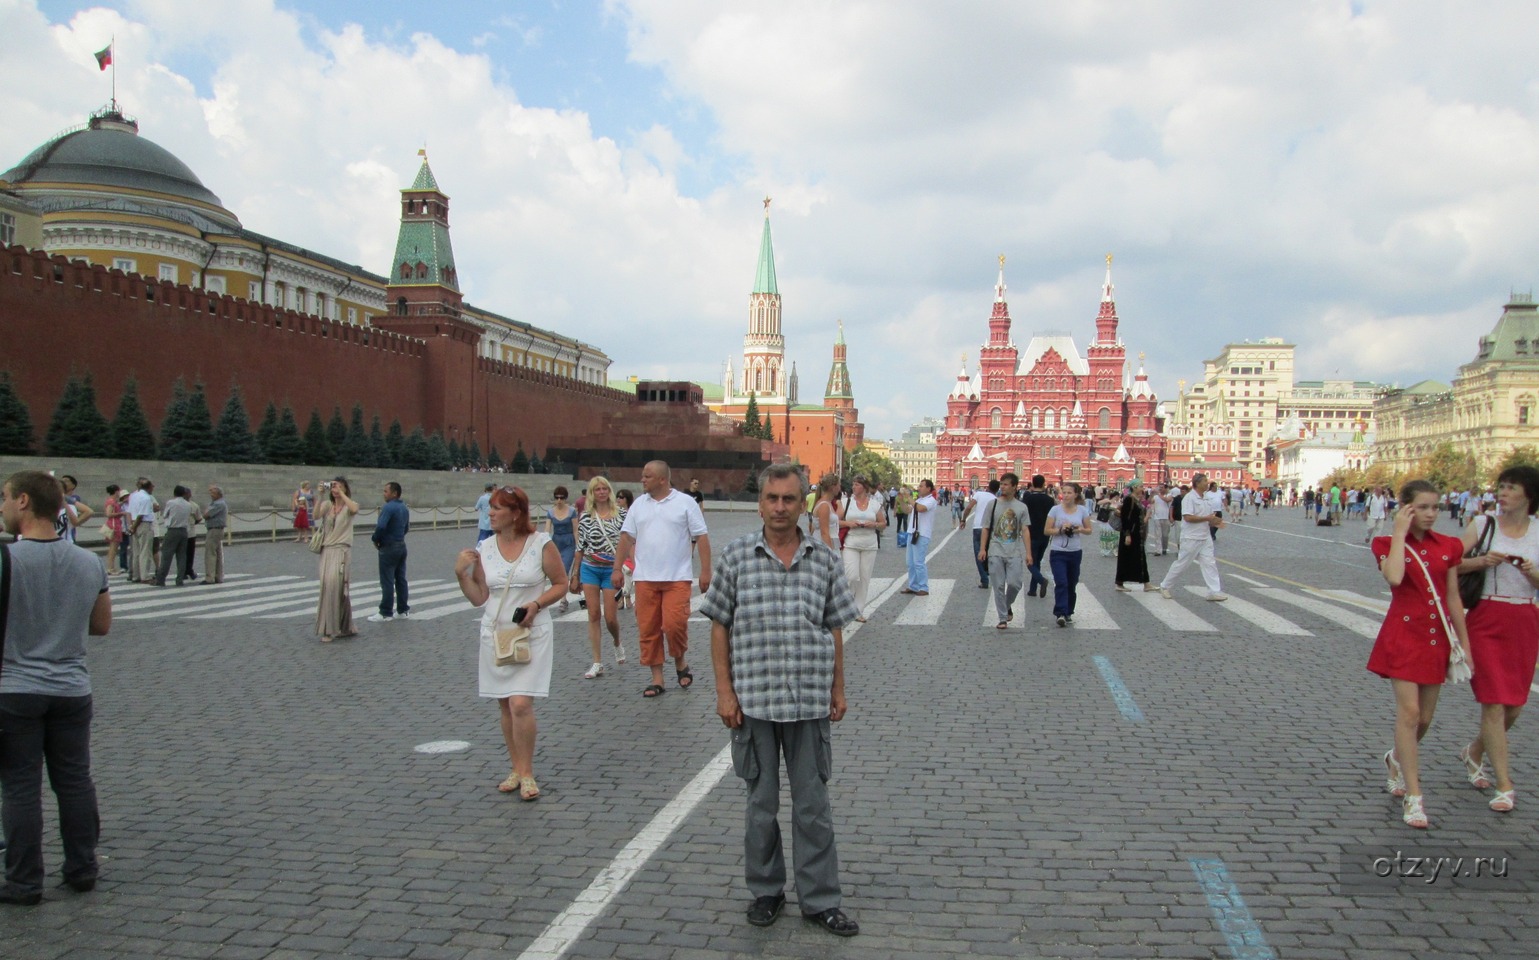 18 00 на площади. Люди на красной площади. Люди на красной площади летом. Москва красная площадь люди. Туристы на красной площади.